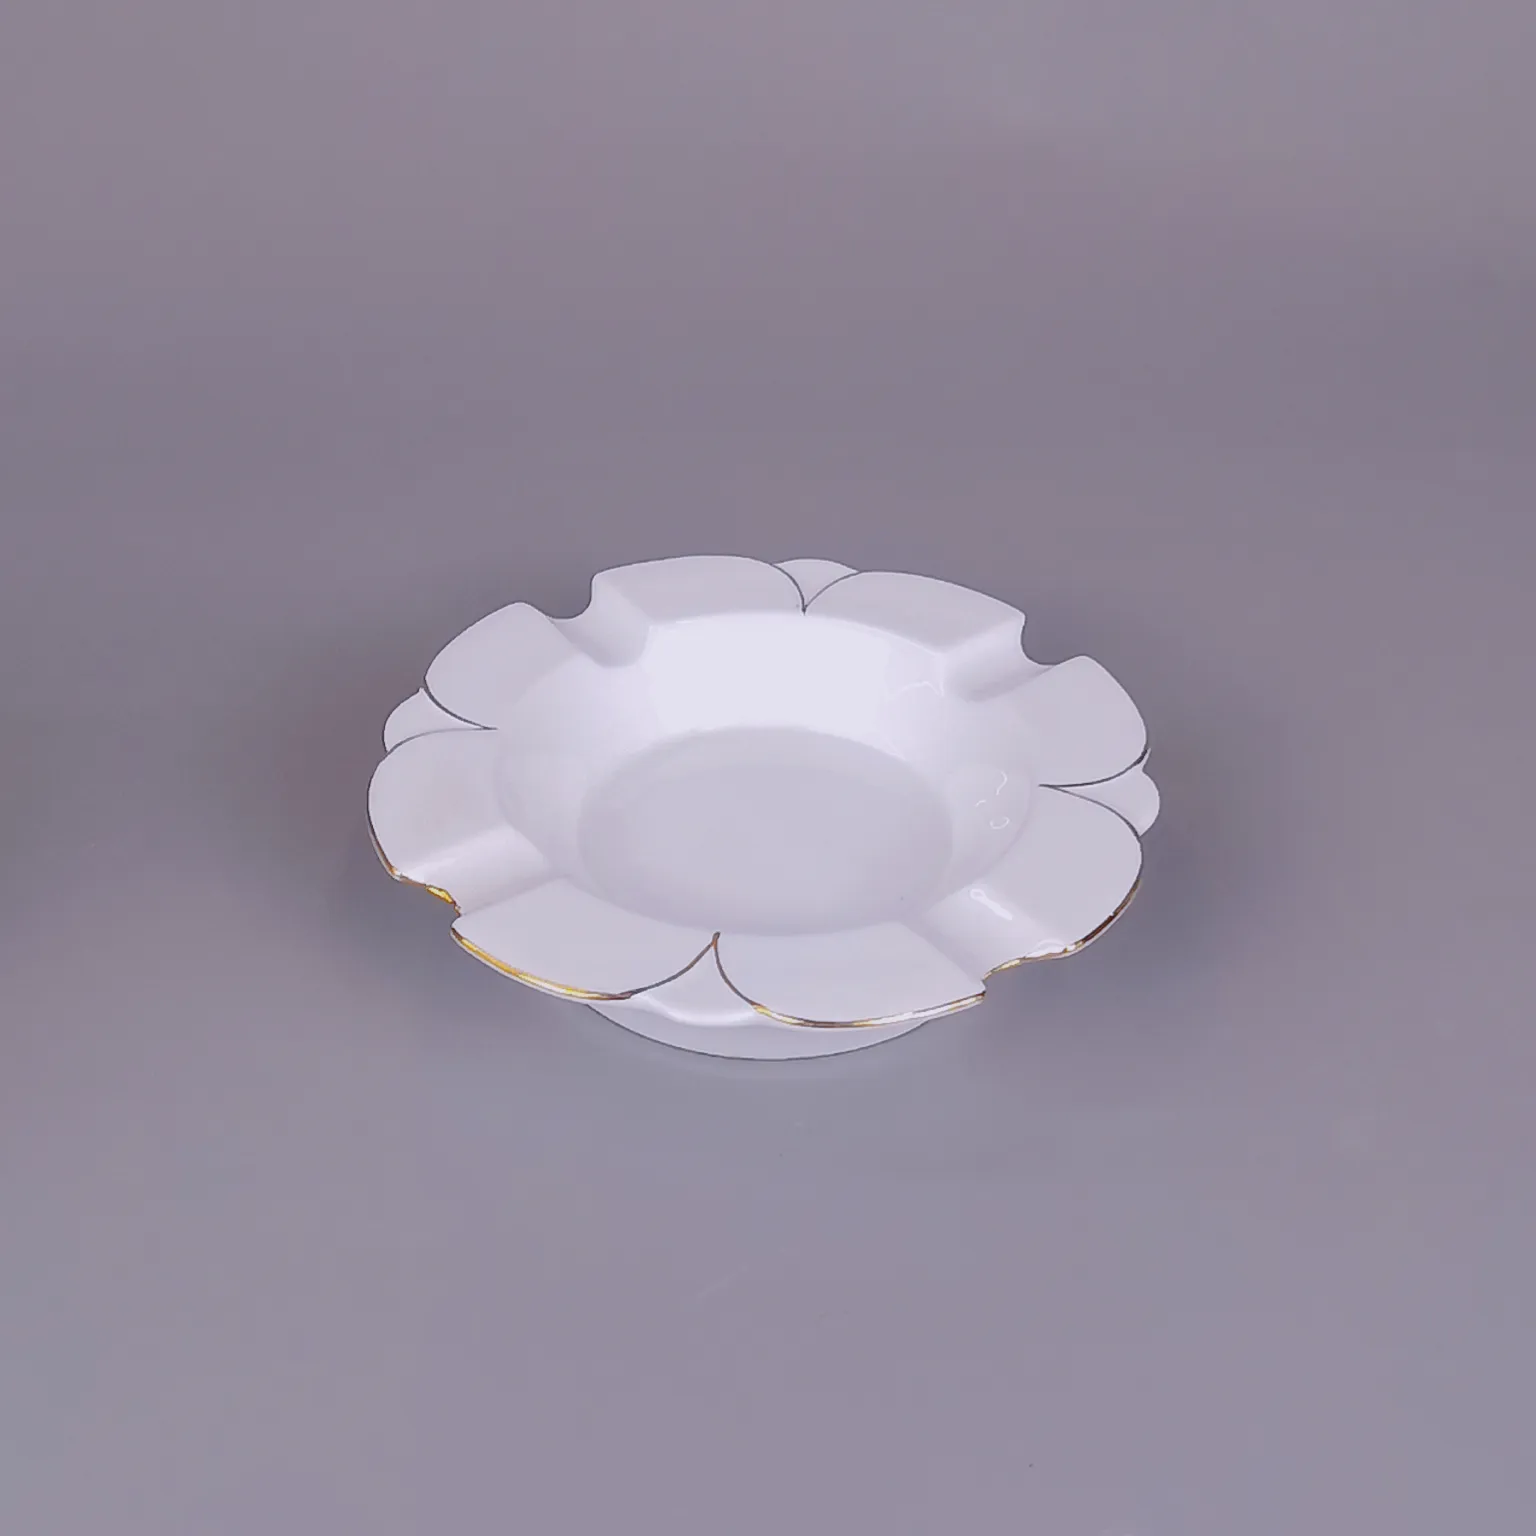 LEXI Lily entwirft Luxus-Keramik-Teese rvice aus weißem Porzellan für Hochzeits restaurants